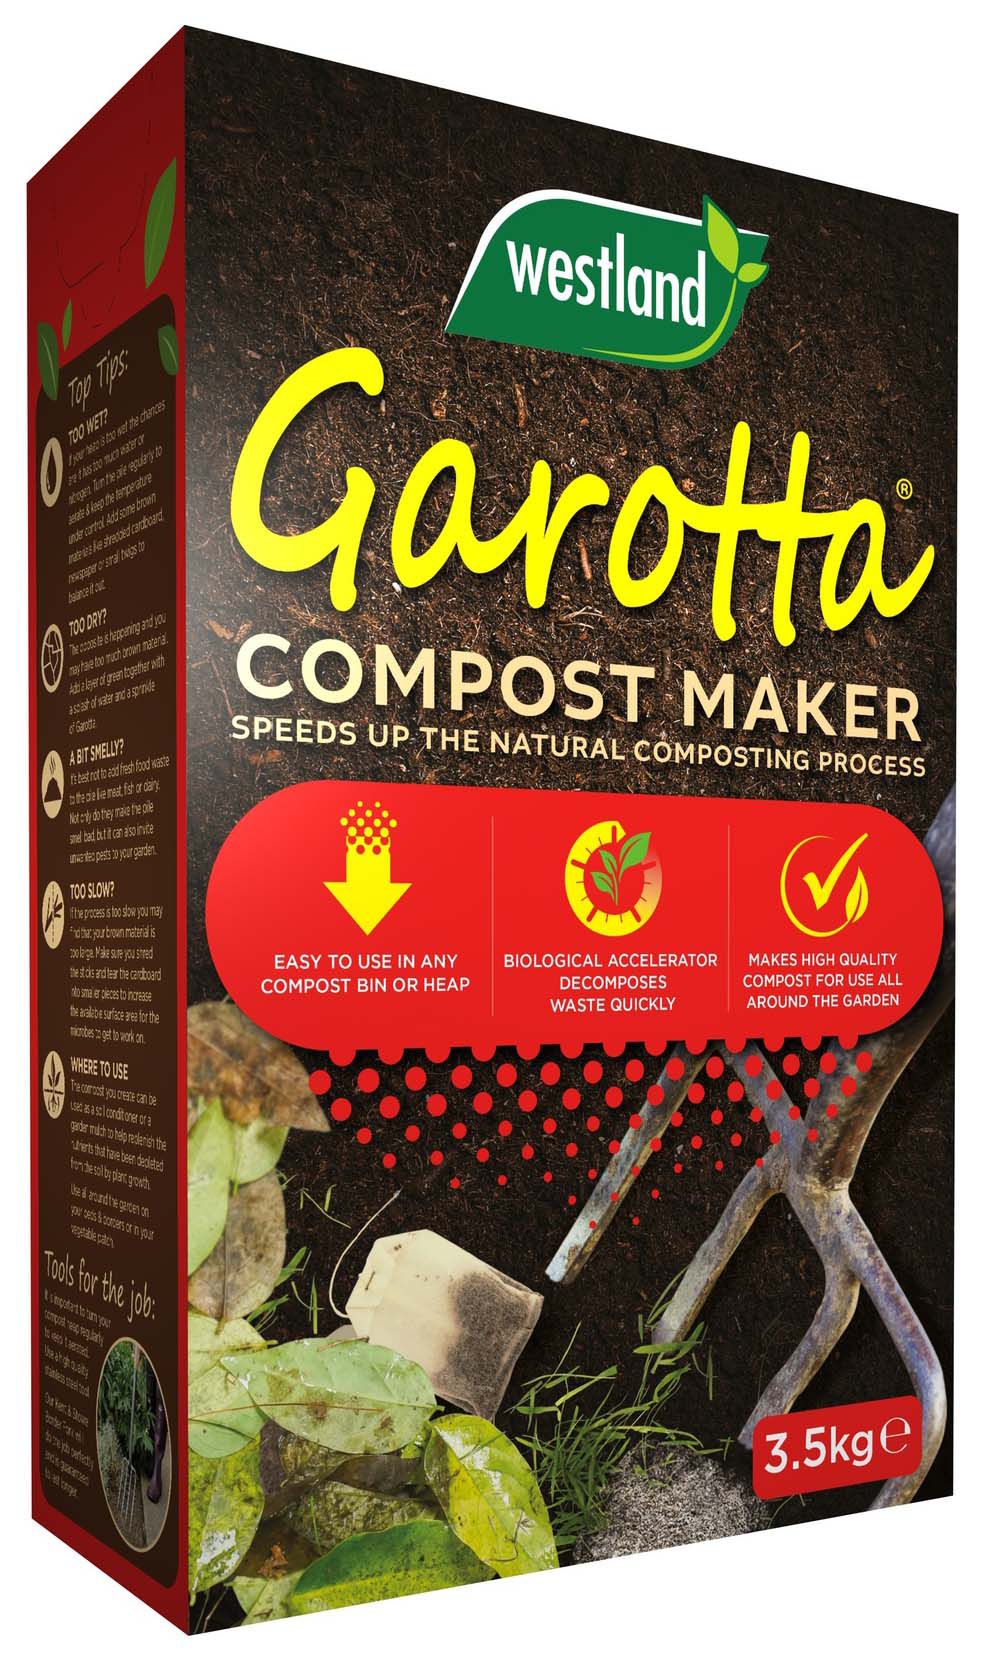 Image of Westland Garrotta Compost Maker - 3.5kg